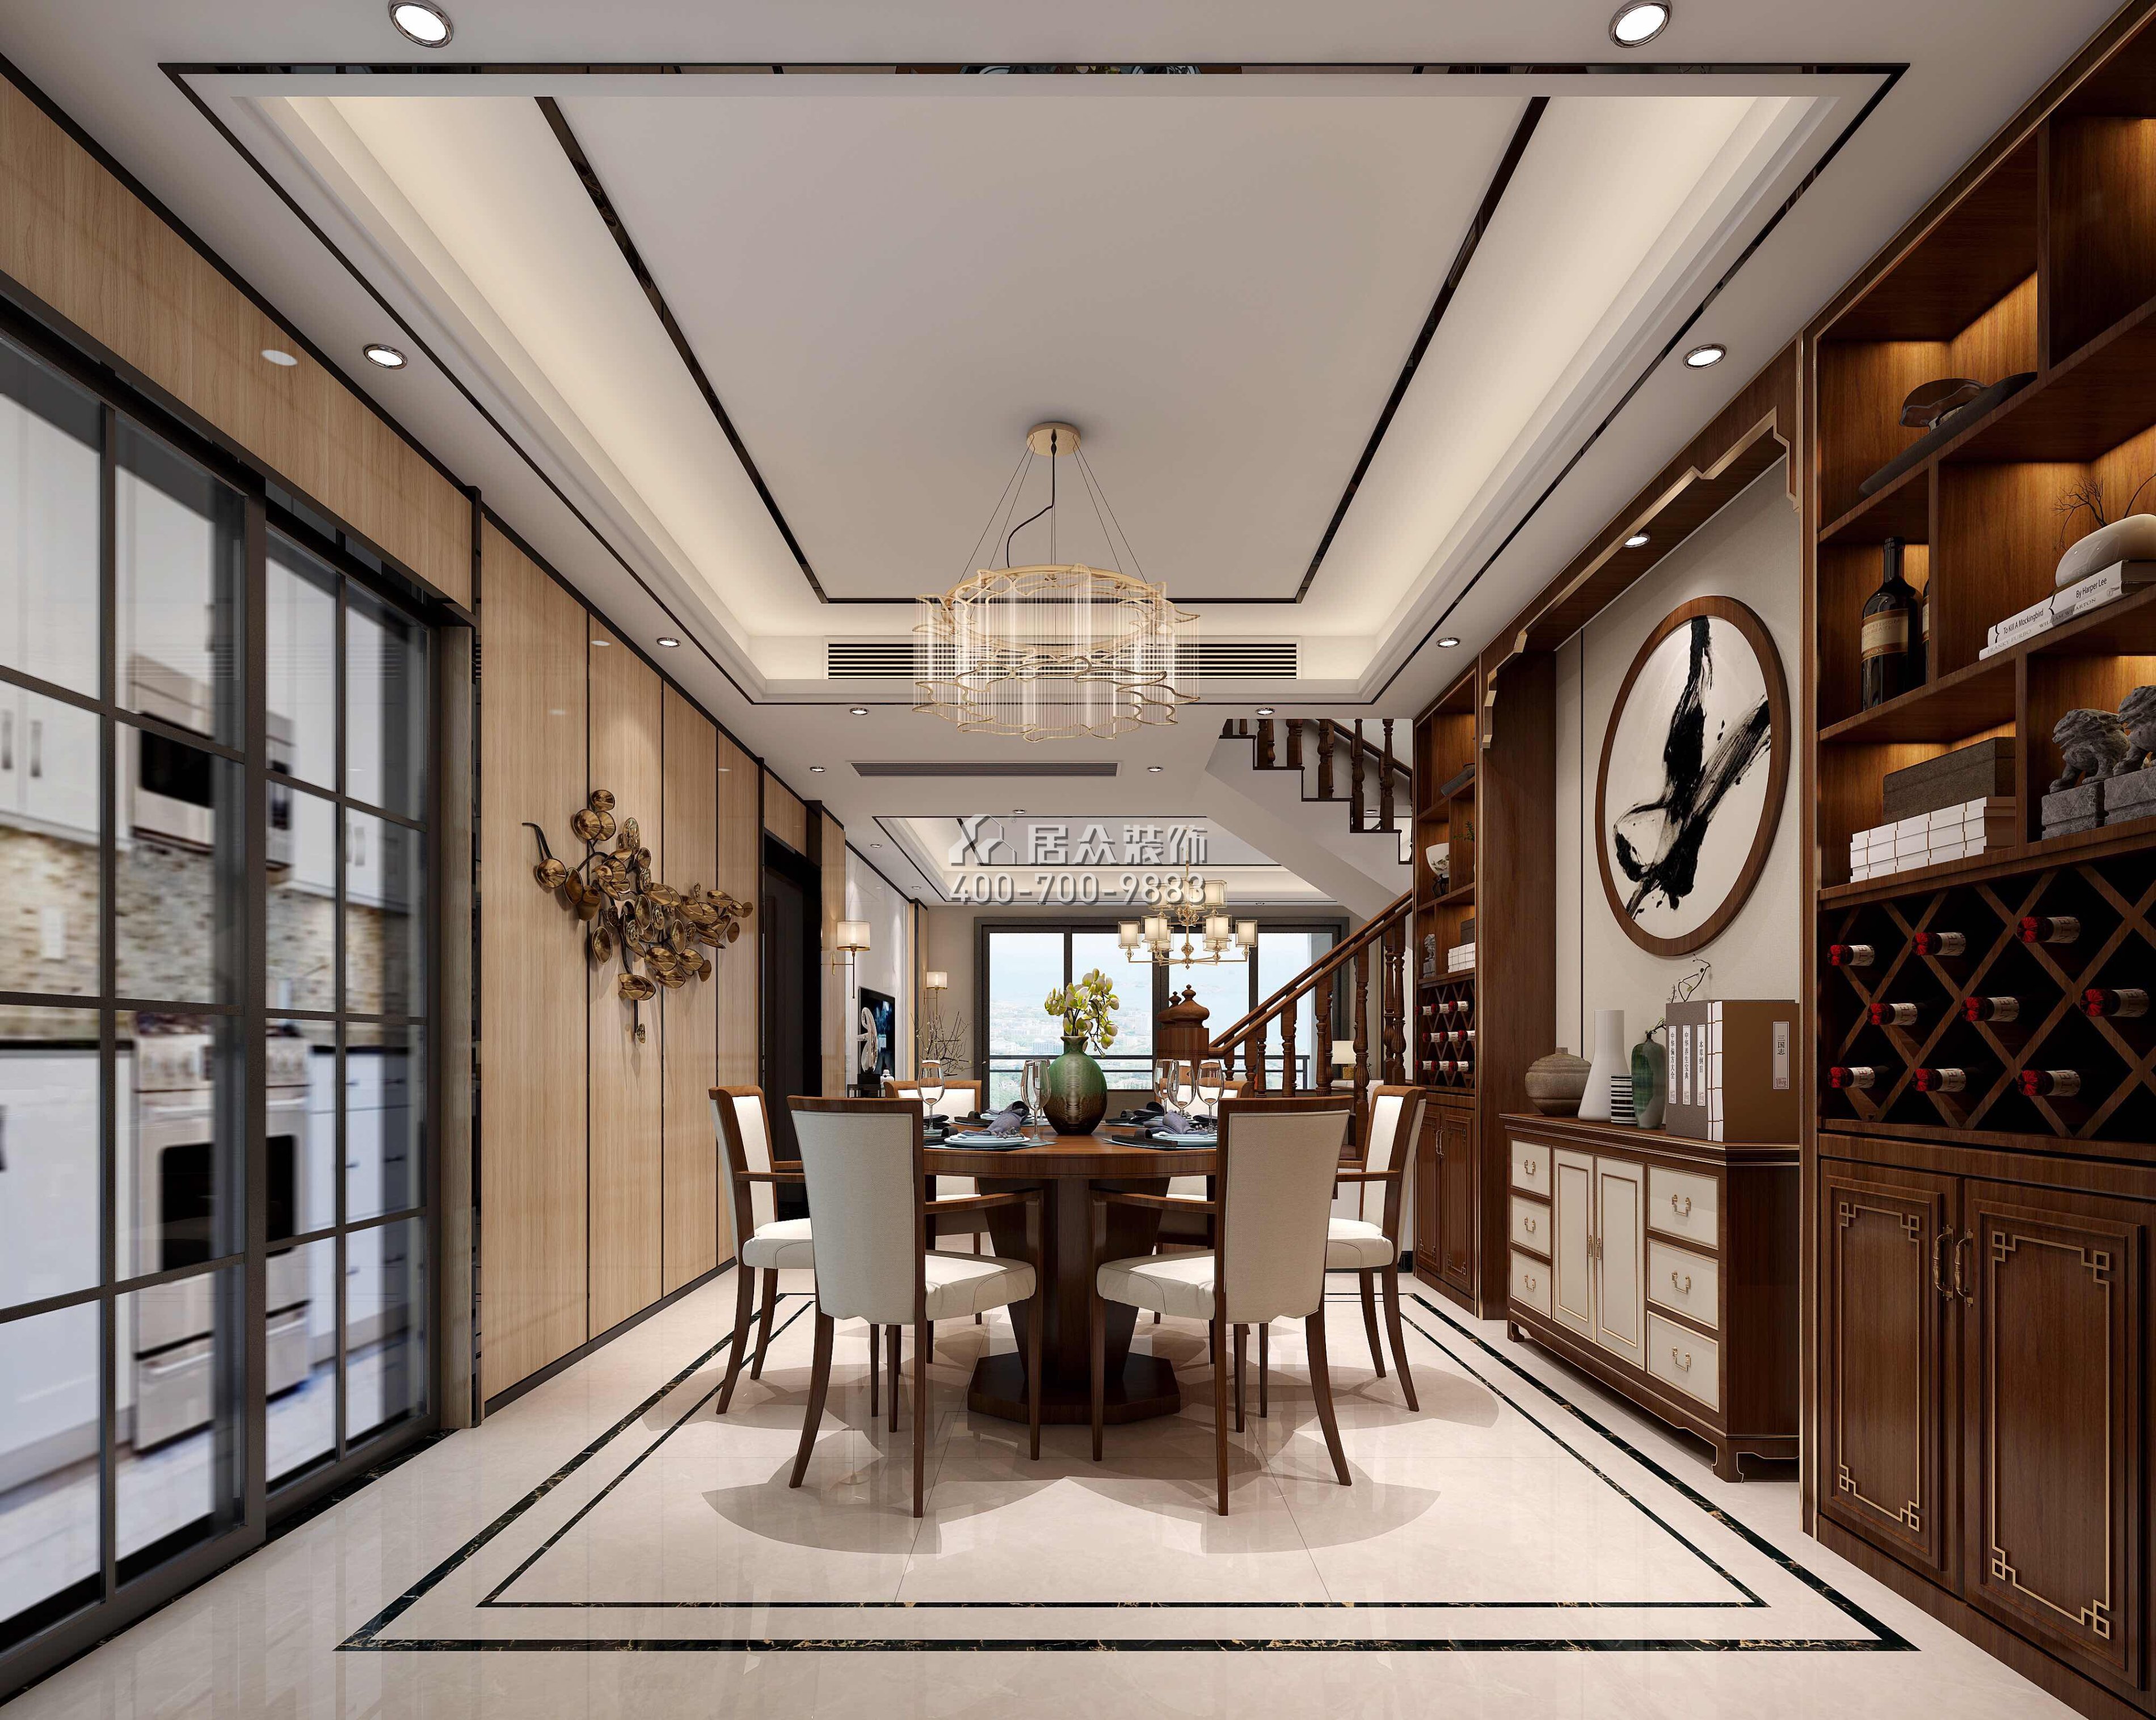 星河丹堤242平方米中式风格复式户型餐厅装修效果图